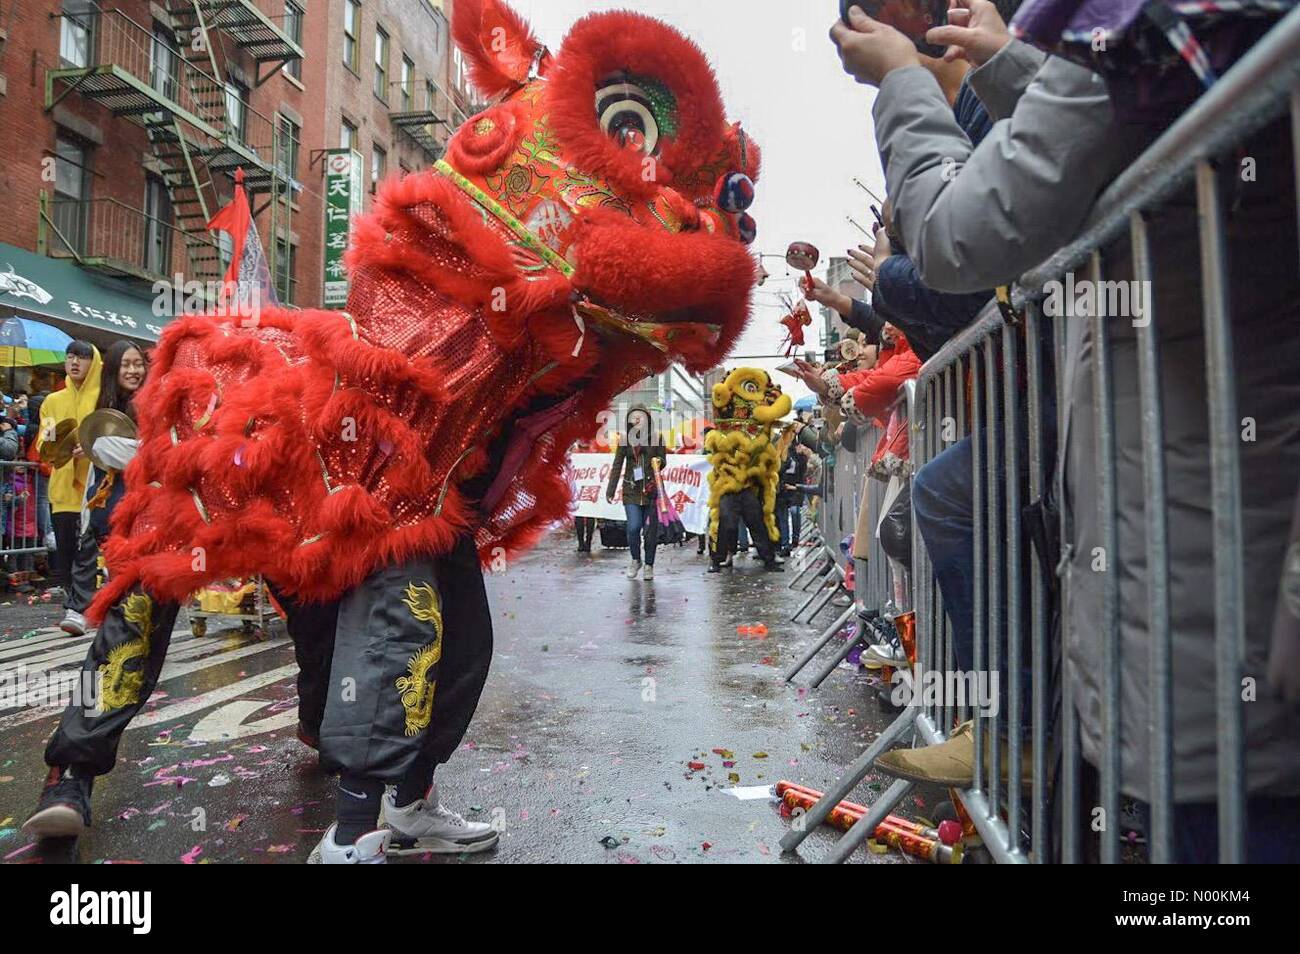 New York City, USA. Feb 25, 2018. Les participants mars pendant la Parade du Nouvel An chinois dans le quartier chinois, à New York, le 25 février 2018. Un défilé du Nouvel An chinois a eu lieu ici le dimanche pour célébrer l'année du chien. Credit : Ryan Rahman/StockimoNews/Alamy Live News Banque D'Images